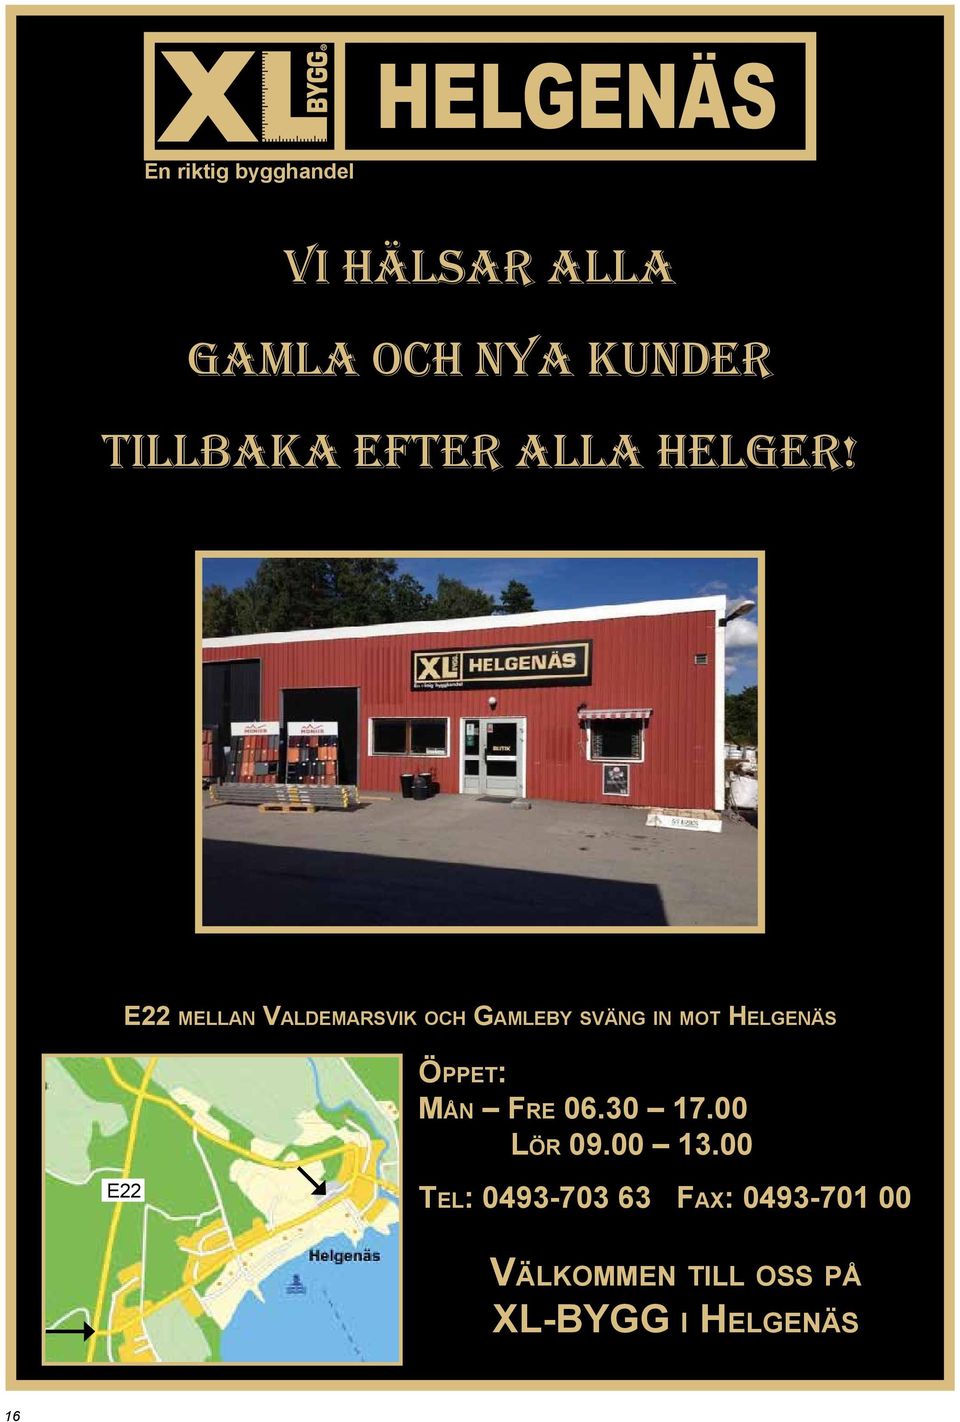 E22 mellan Valdemarsvik och Gamleby sväng in mot Helgenäs E22 Öppet: